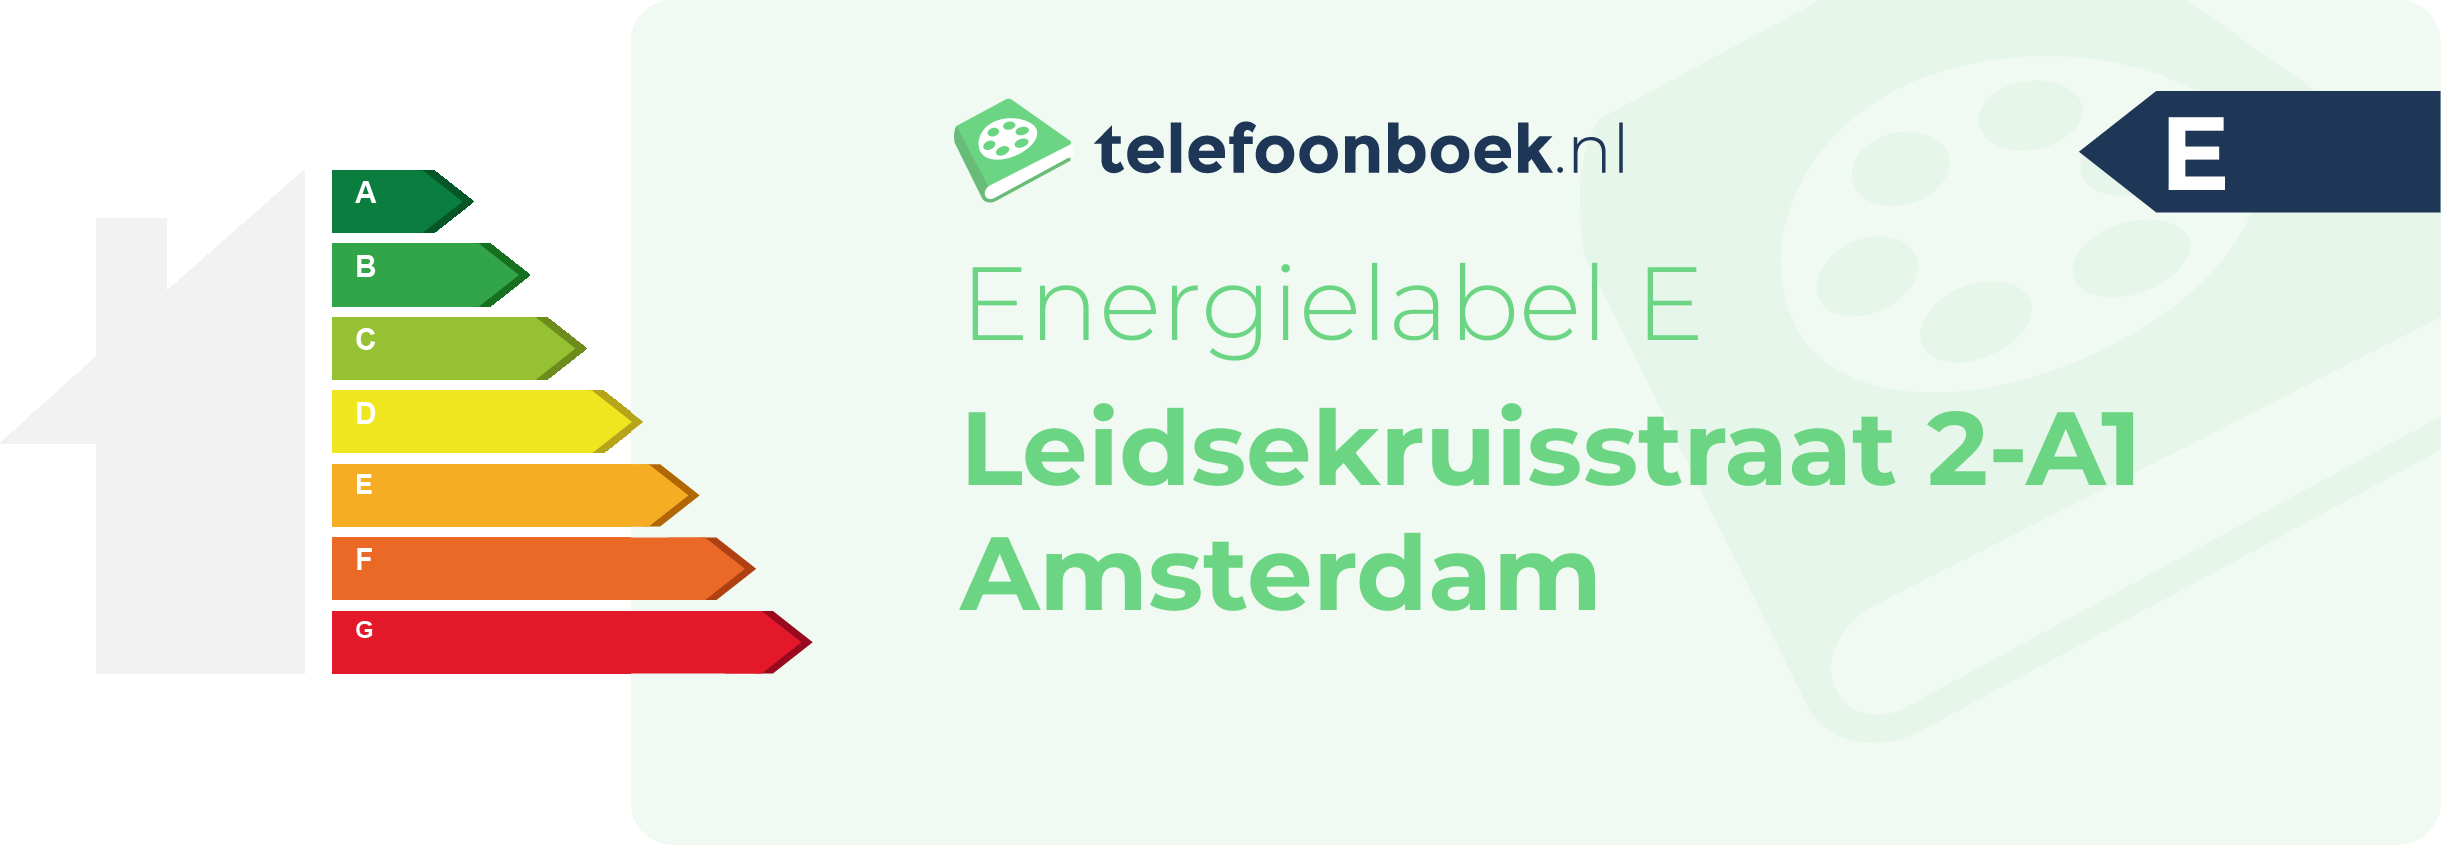 Energielabel Leidsekruisstraat 2-A1 Amsterdam